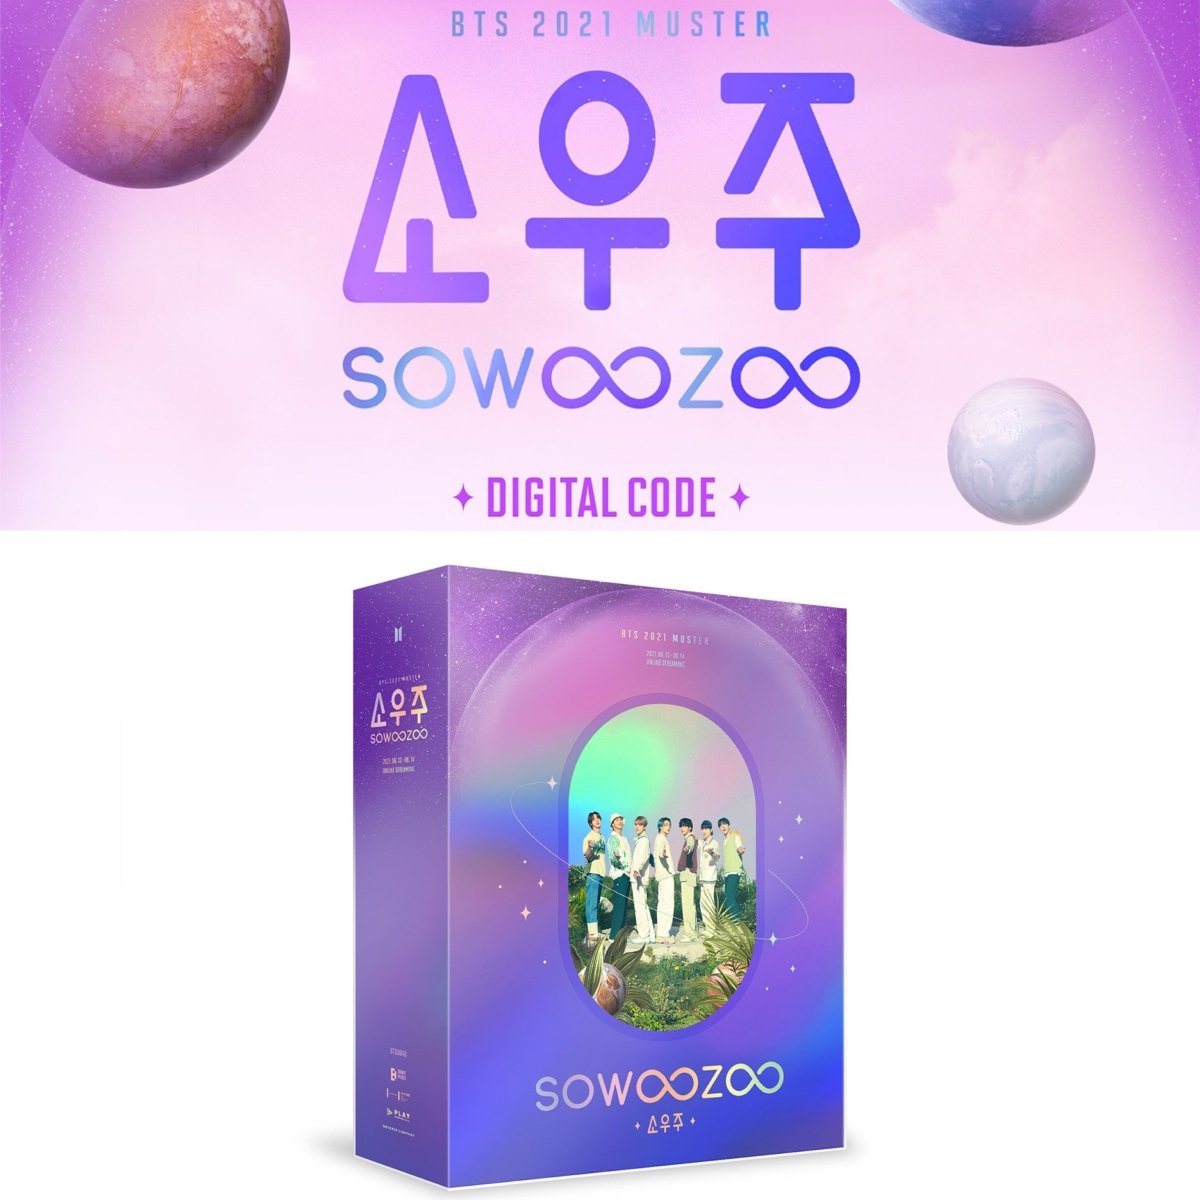 BTS OFFICIAL 2021 MUSTER SOWOOZOO DIGITAL CODE – K-STAR